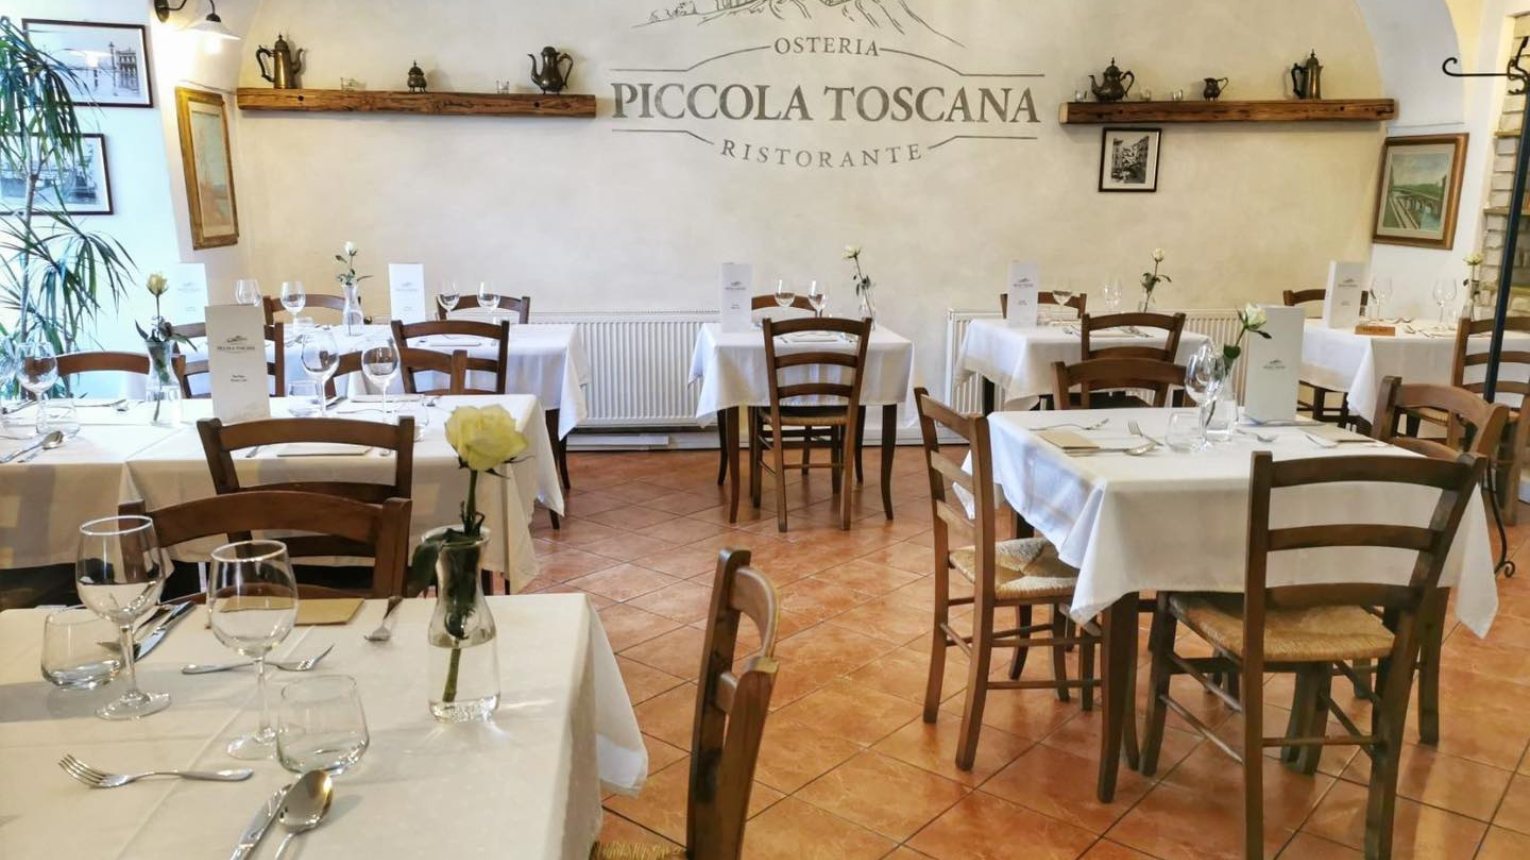 Olasz élőzenés vacsora borsorral a Piccola Toscanaban 2 főre 4